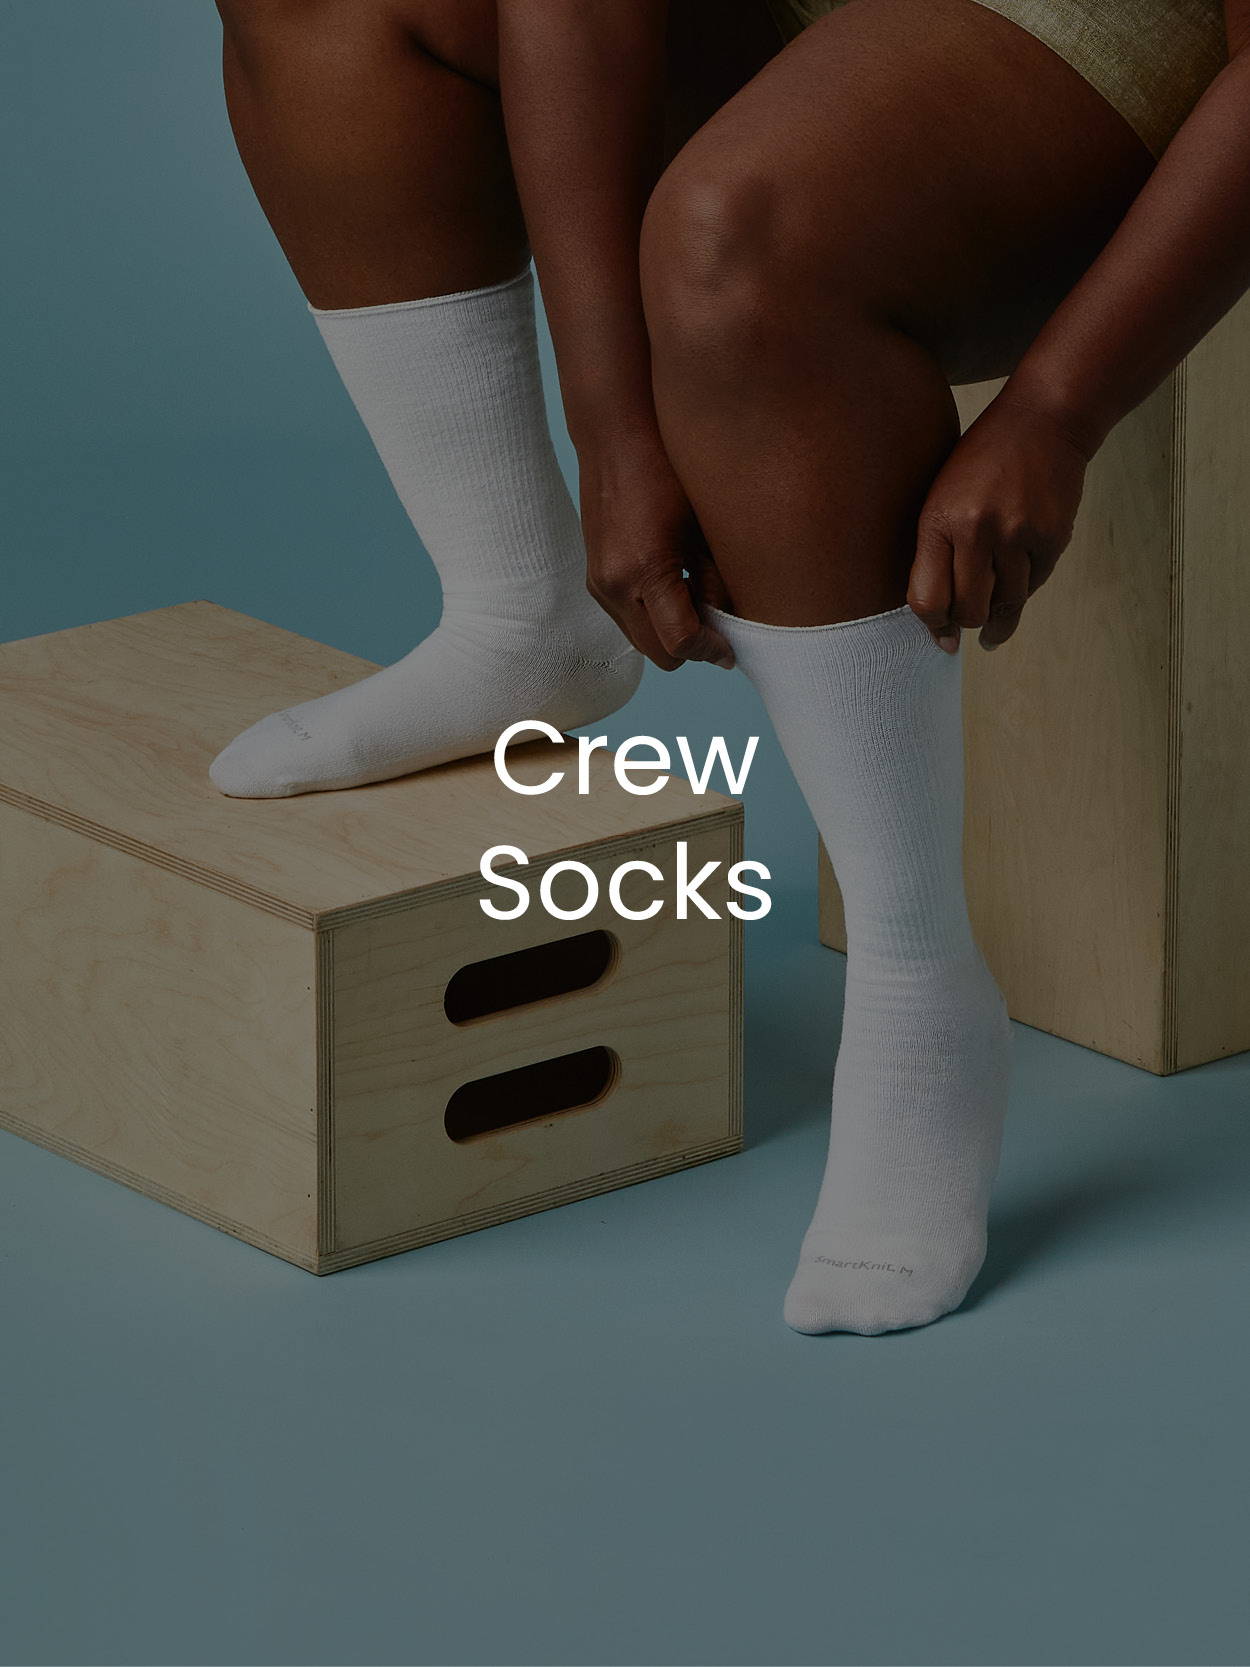 Crew Socks